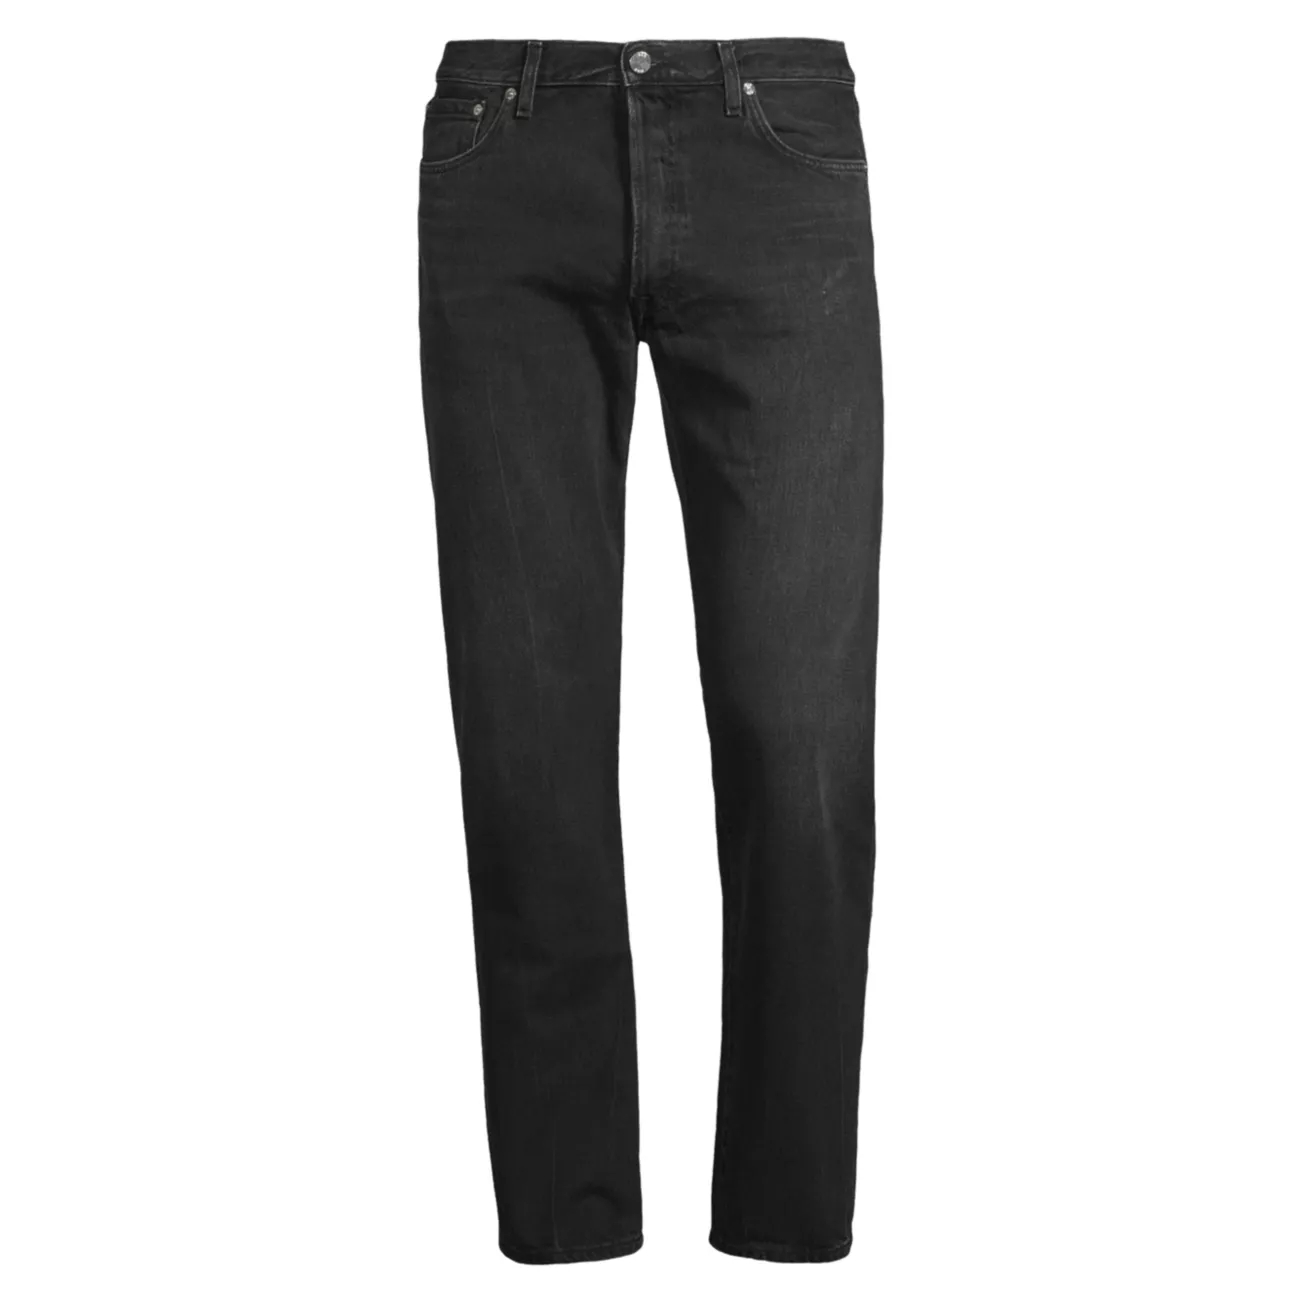 Узкие эластичные джинсы прямого кроя Fading BLK DNM